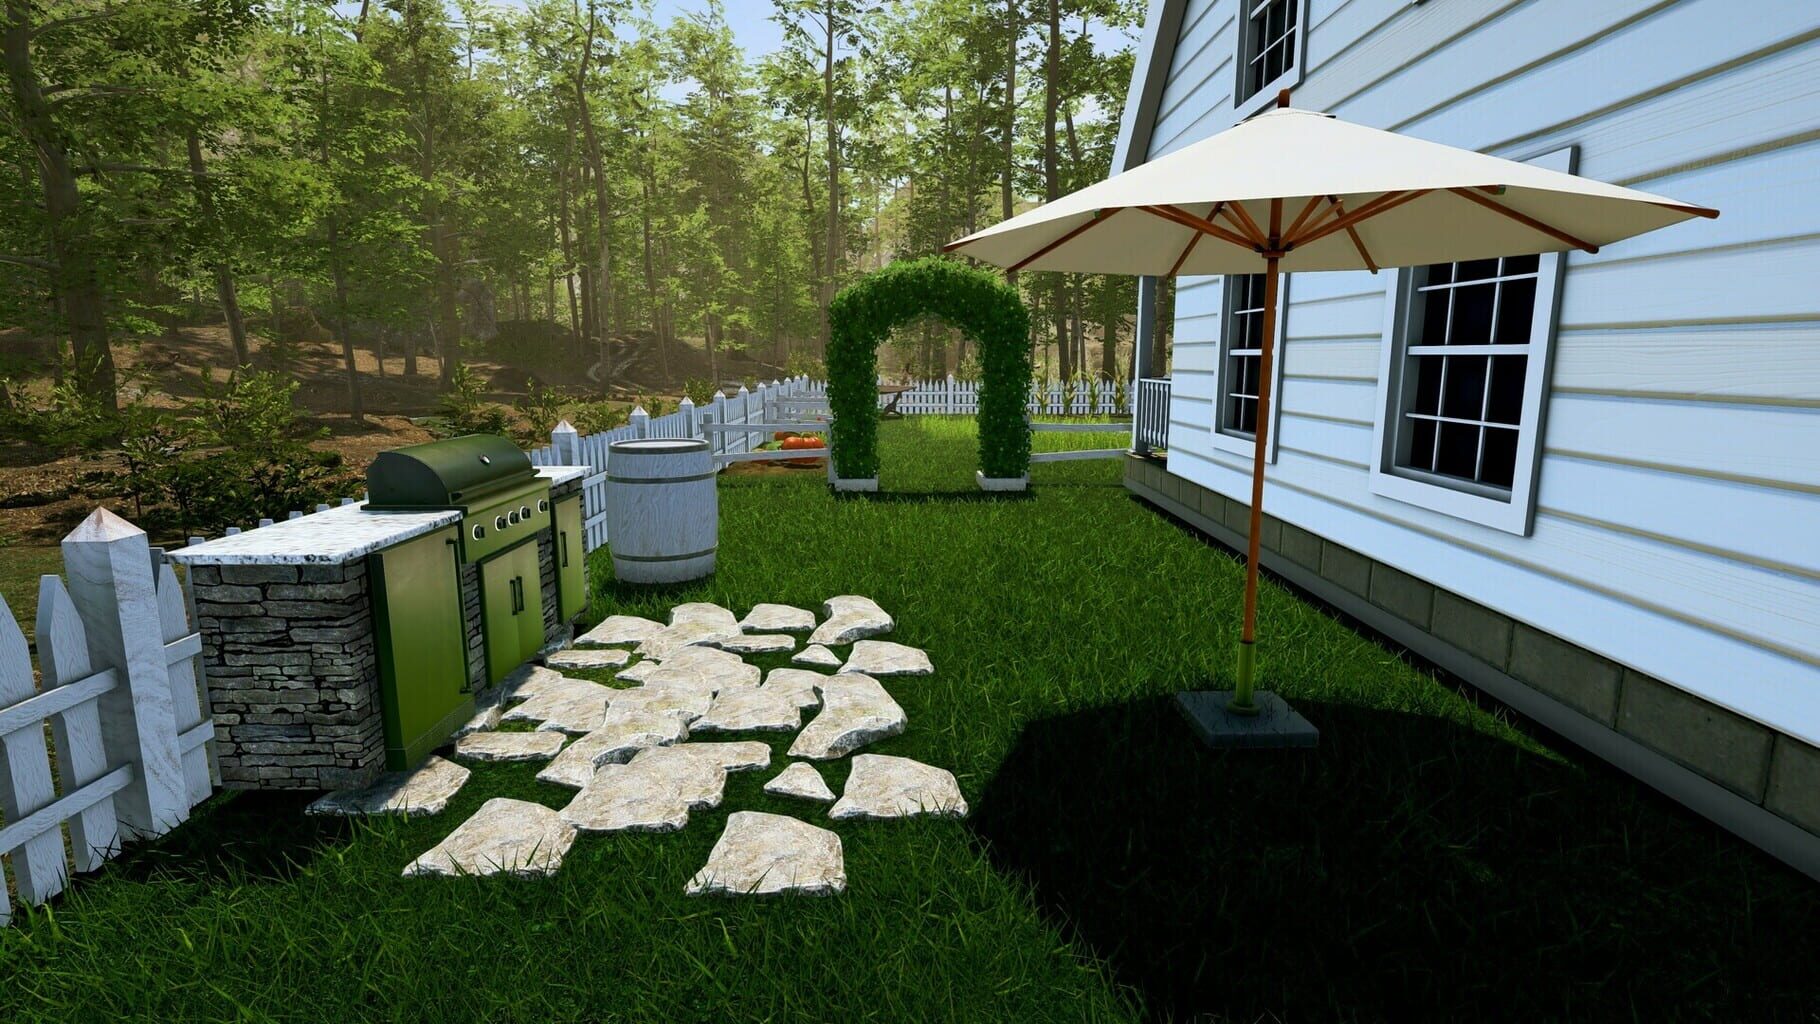 Captura de pantalla - Garden Simulator